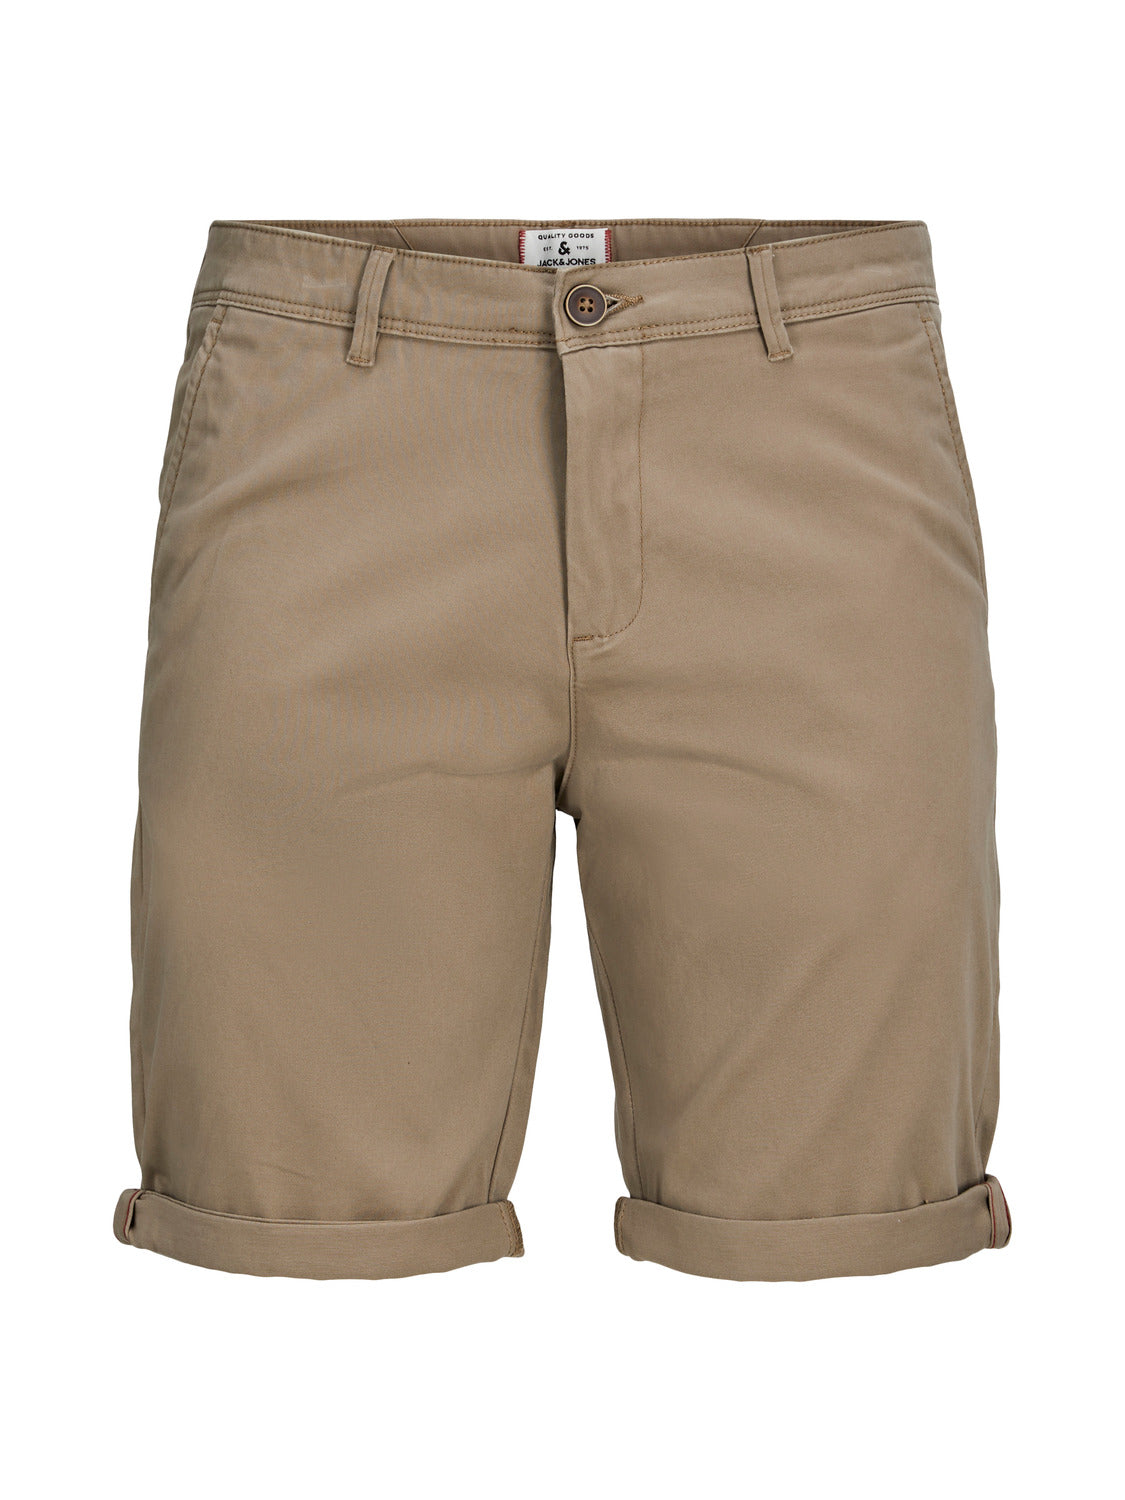 JPSTBOWIE Shorts - Beige